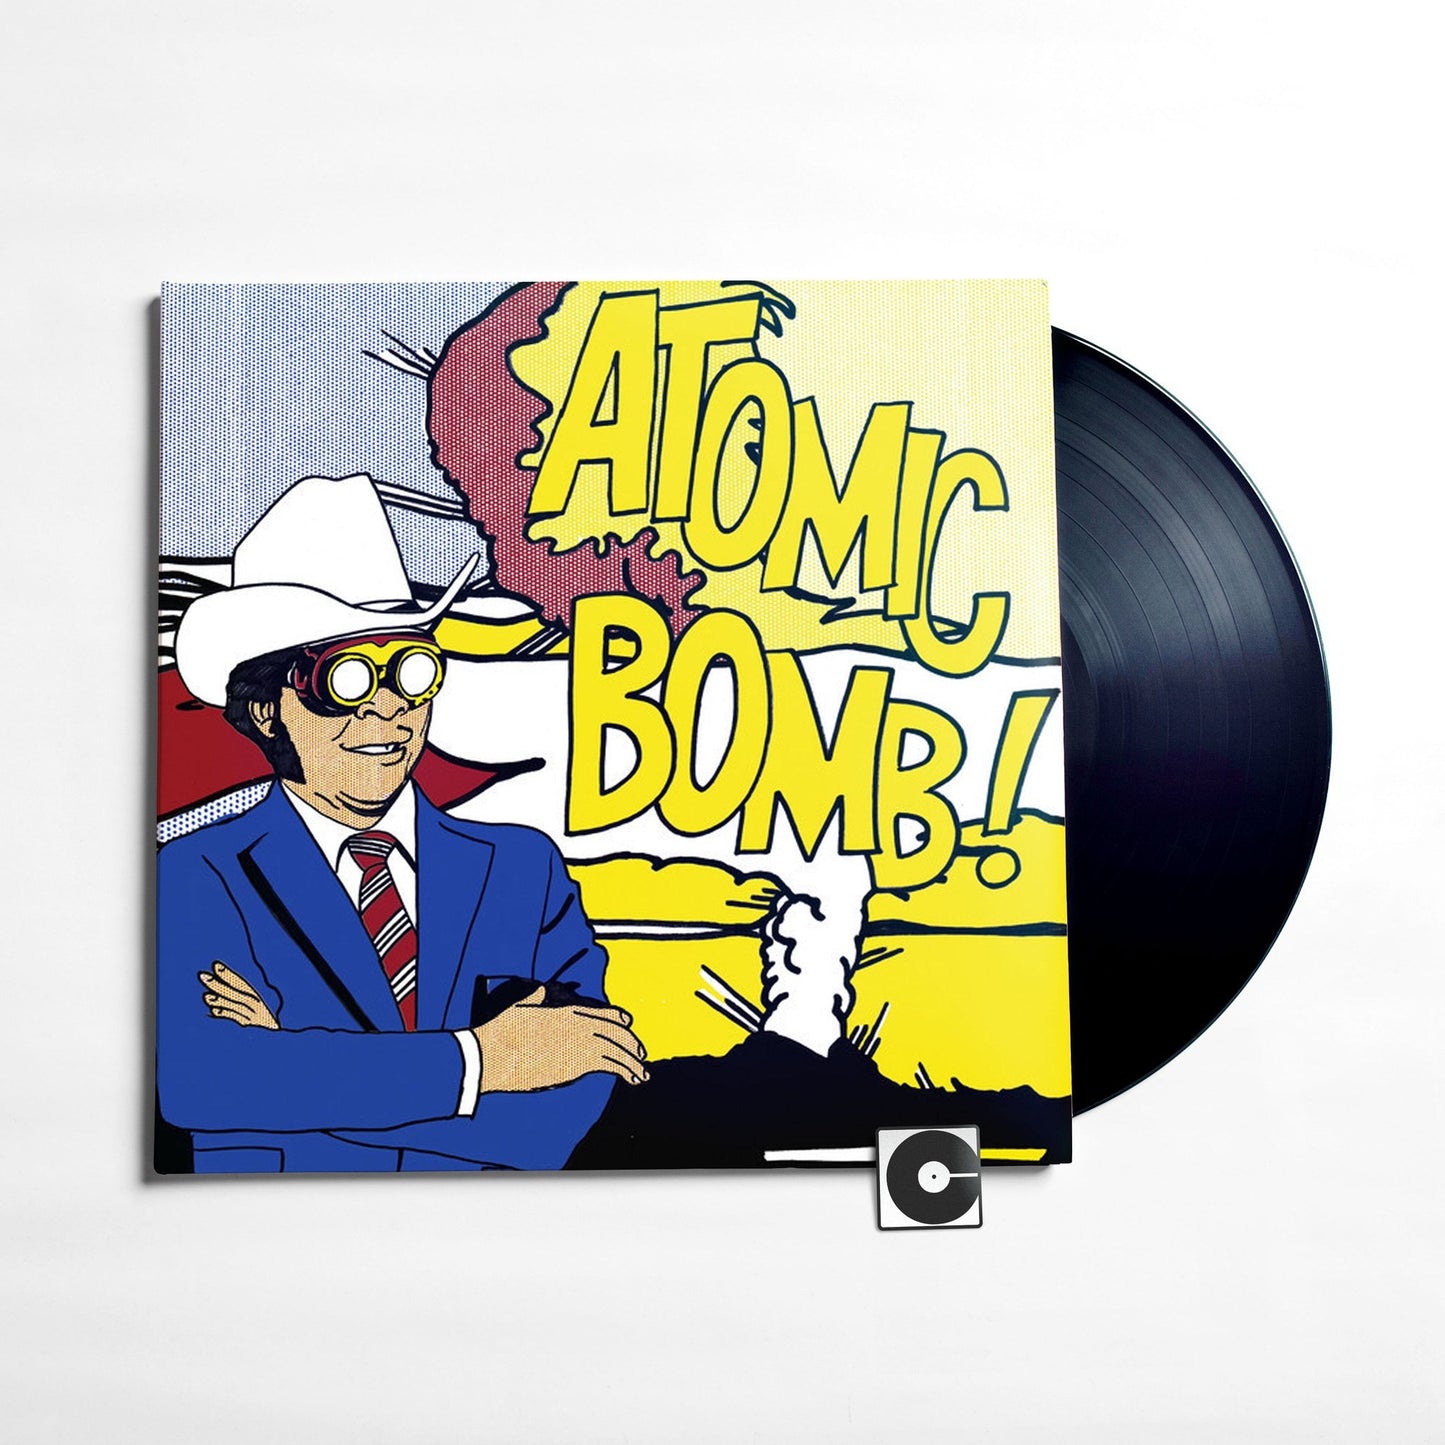 The Atomic Bomb Band - "Atomic Bomb Band: Music Of William Onyeabor"